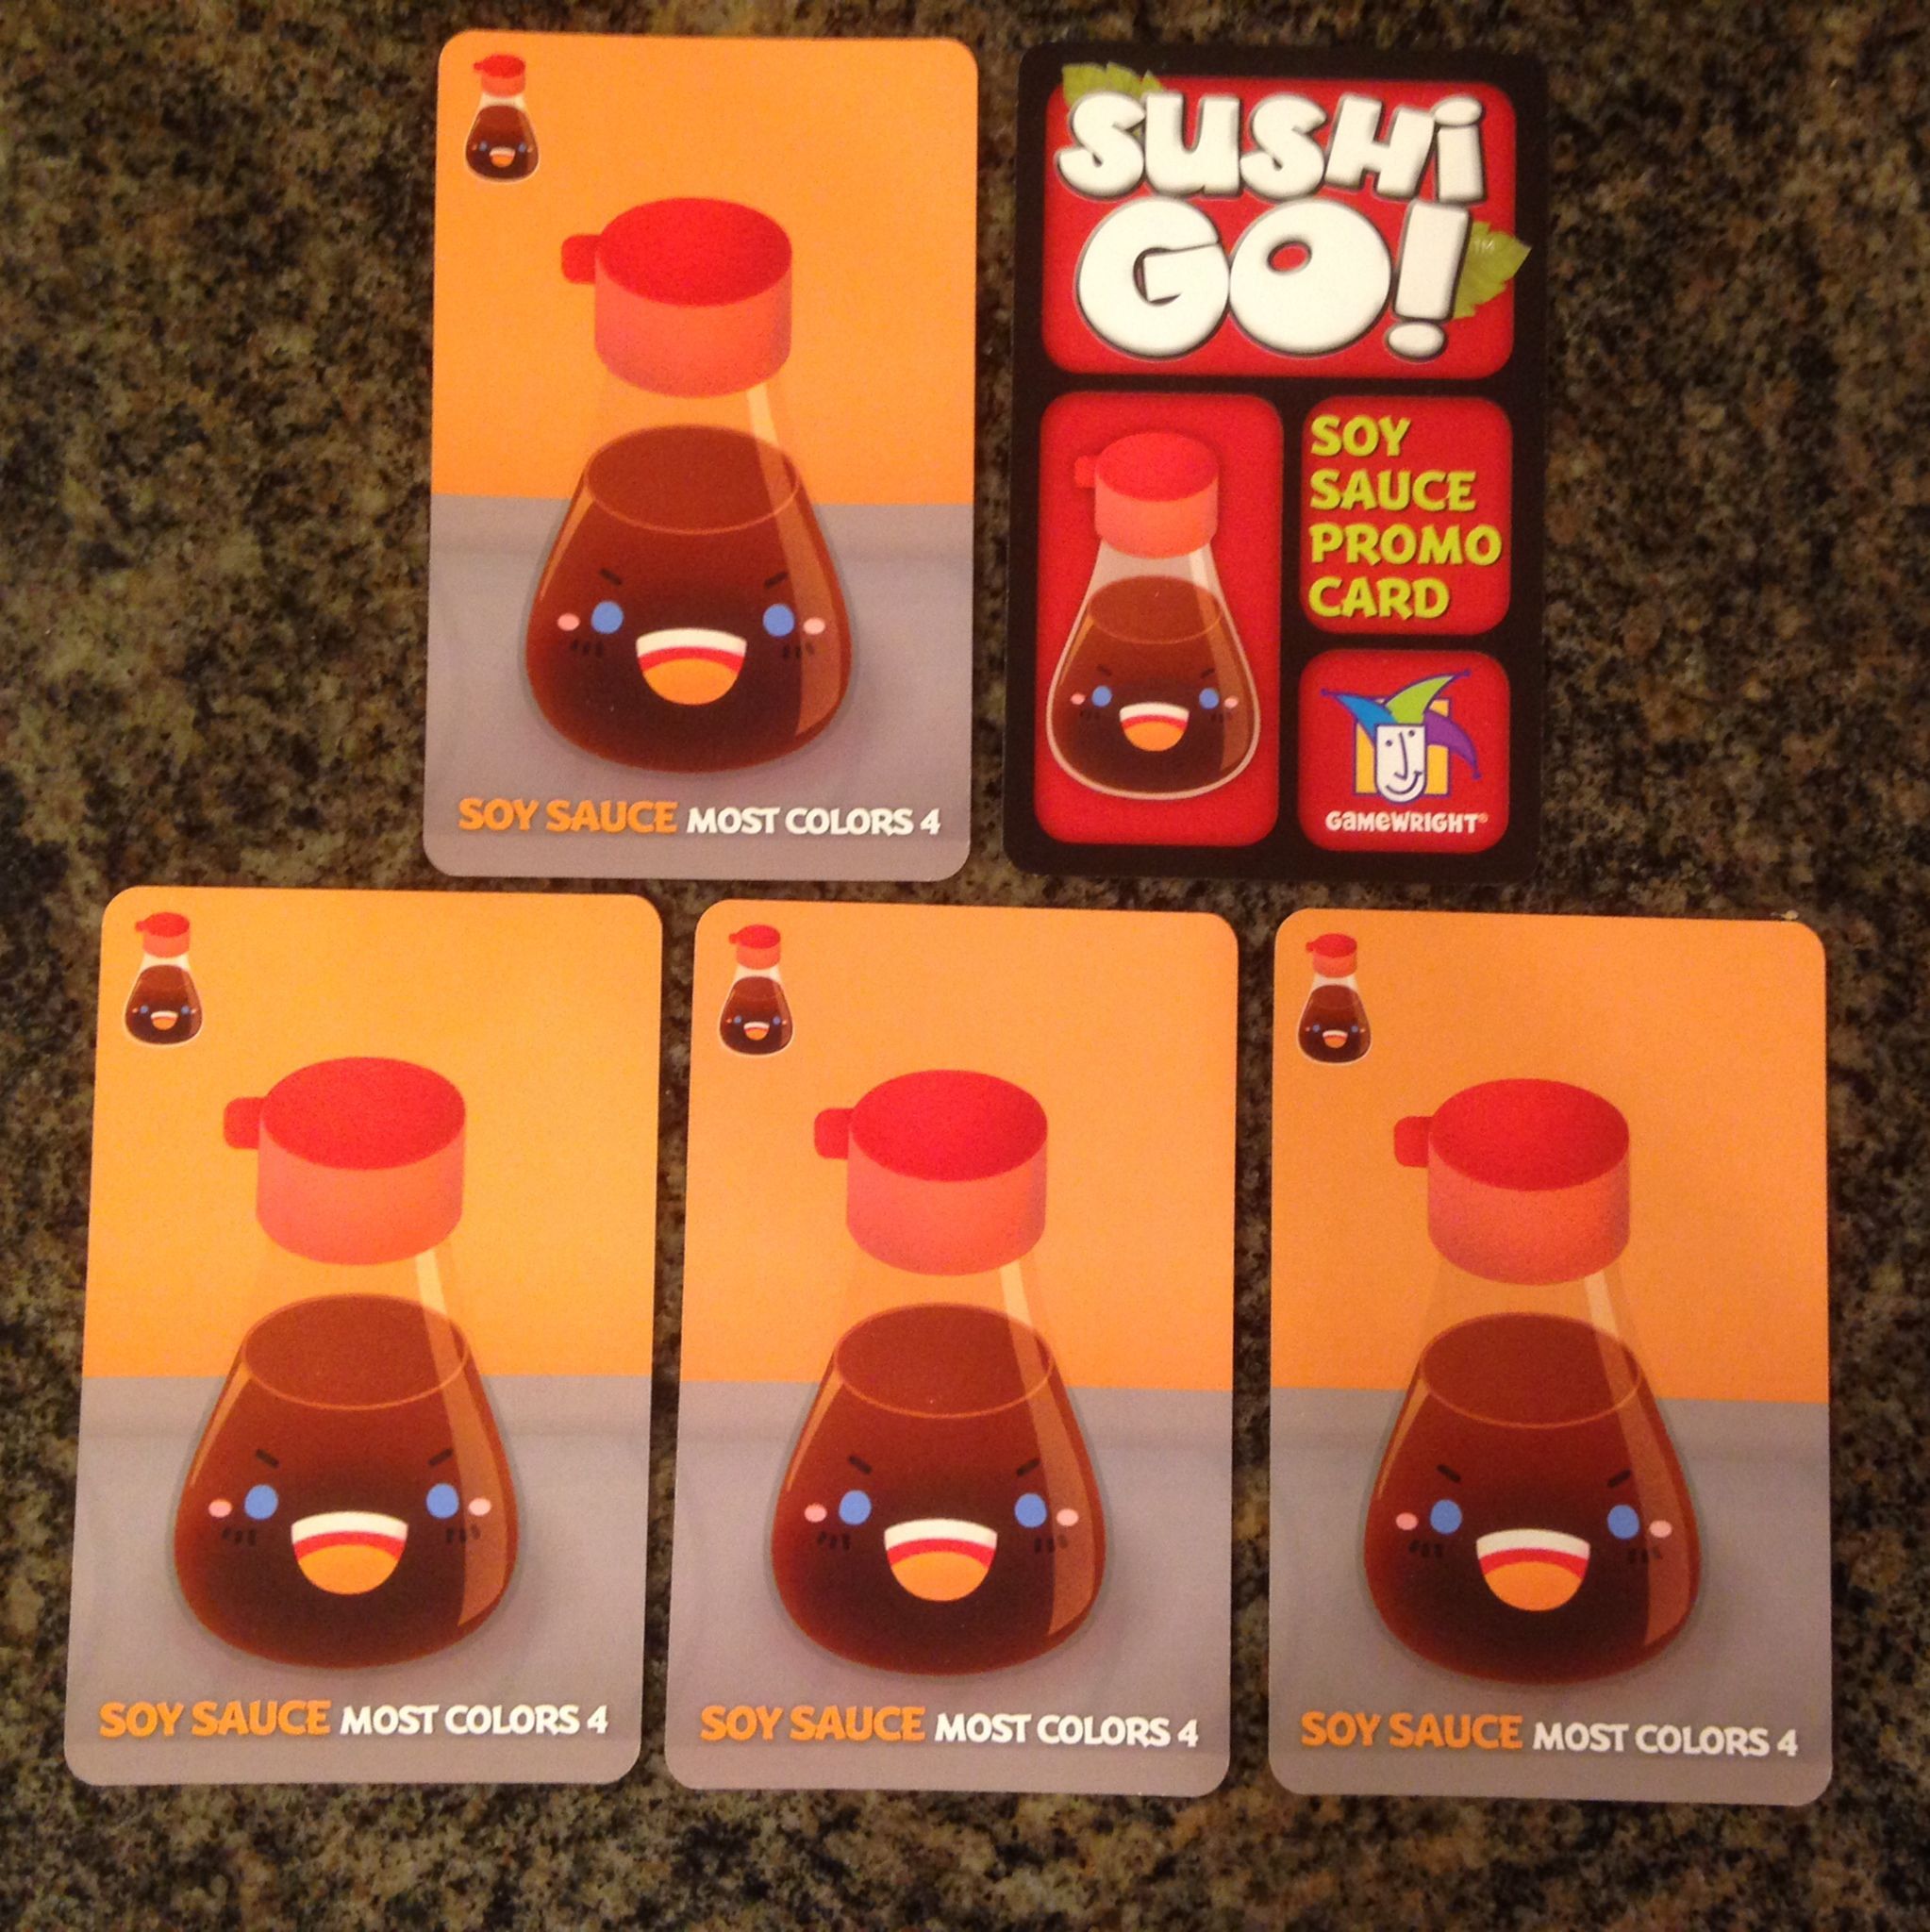 Sushi Go!: Soy Sauce Promo